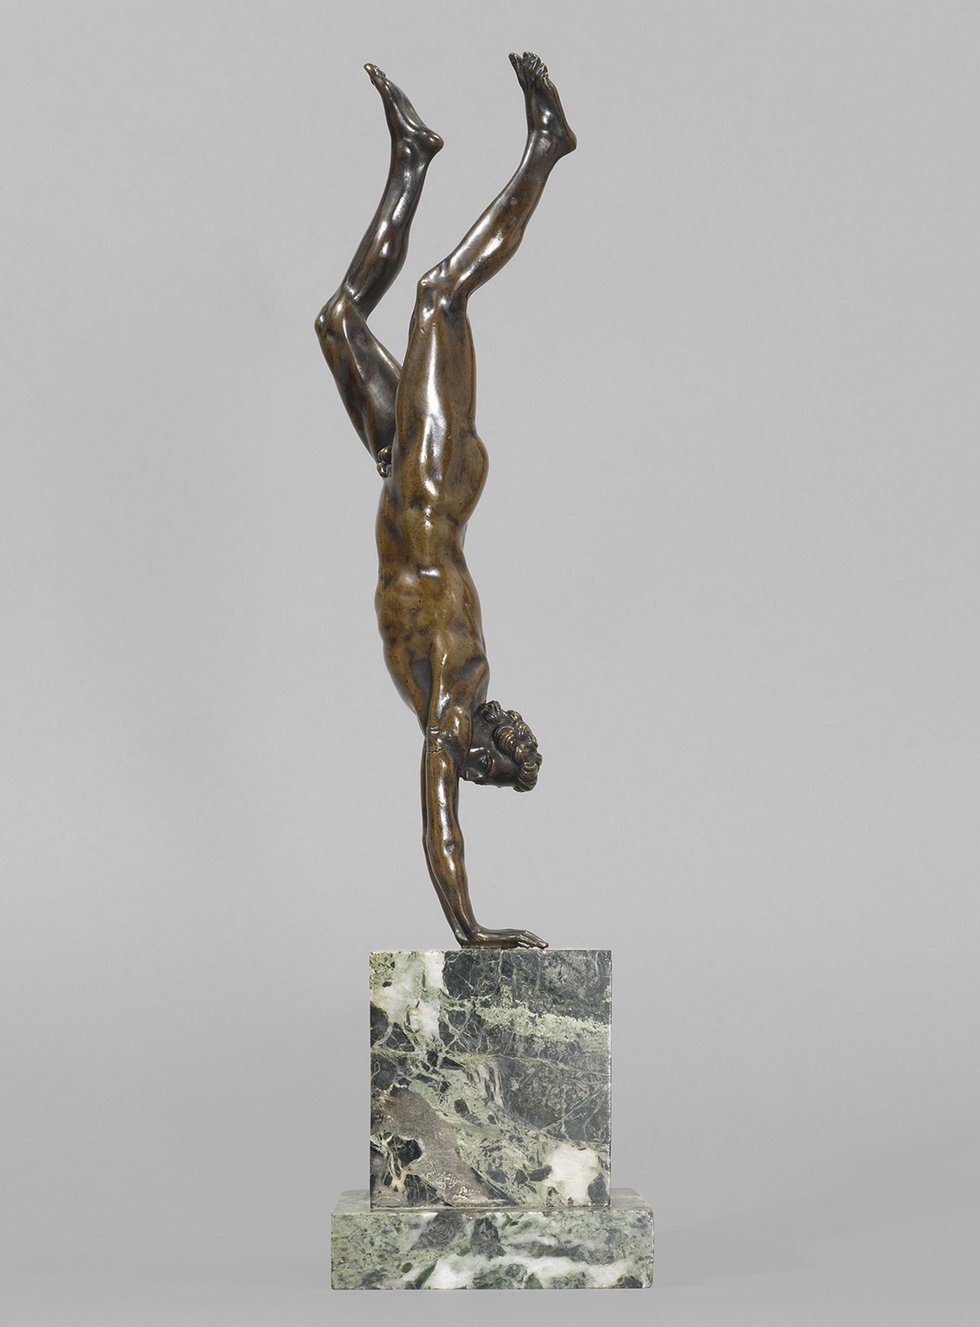 Bronze sculpture of naked man doing a handstand